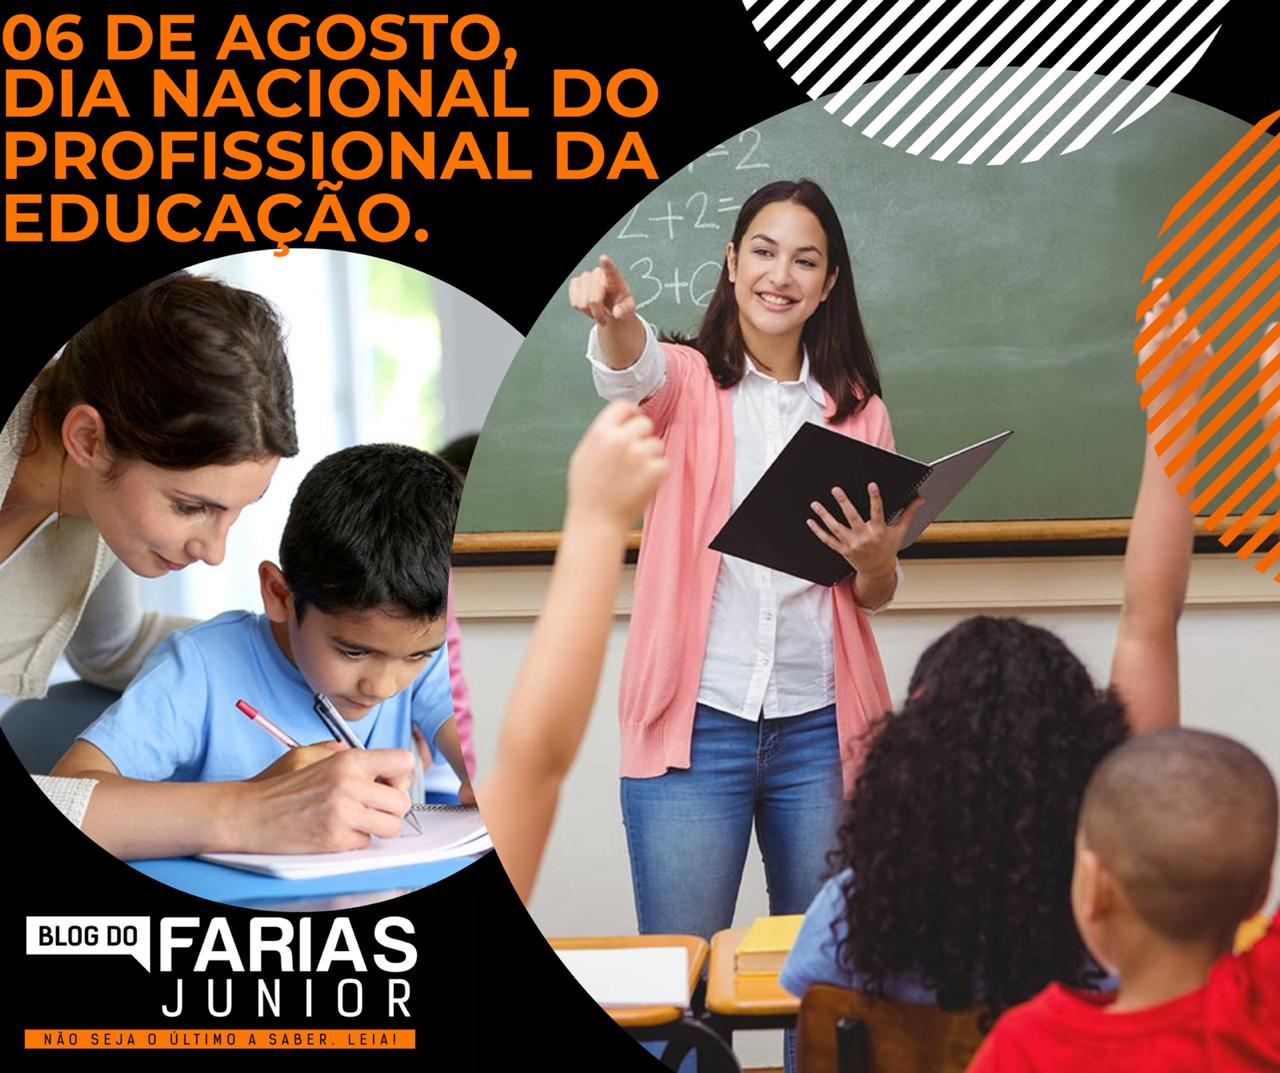 Dia nacional dos profissionais da educação 06 de agosto Blog Do Farias Junior Hoje E Dia Nacional Dos Profissionais De Educacao